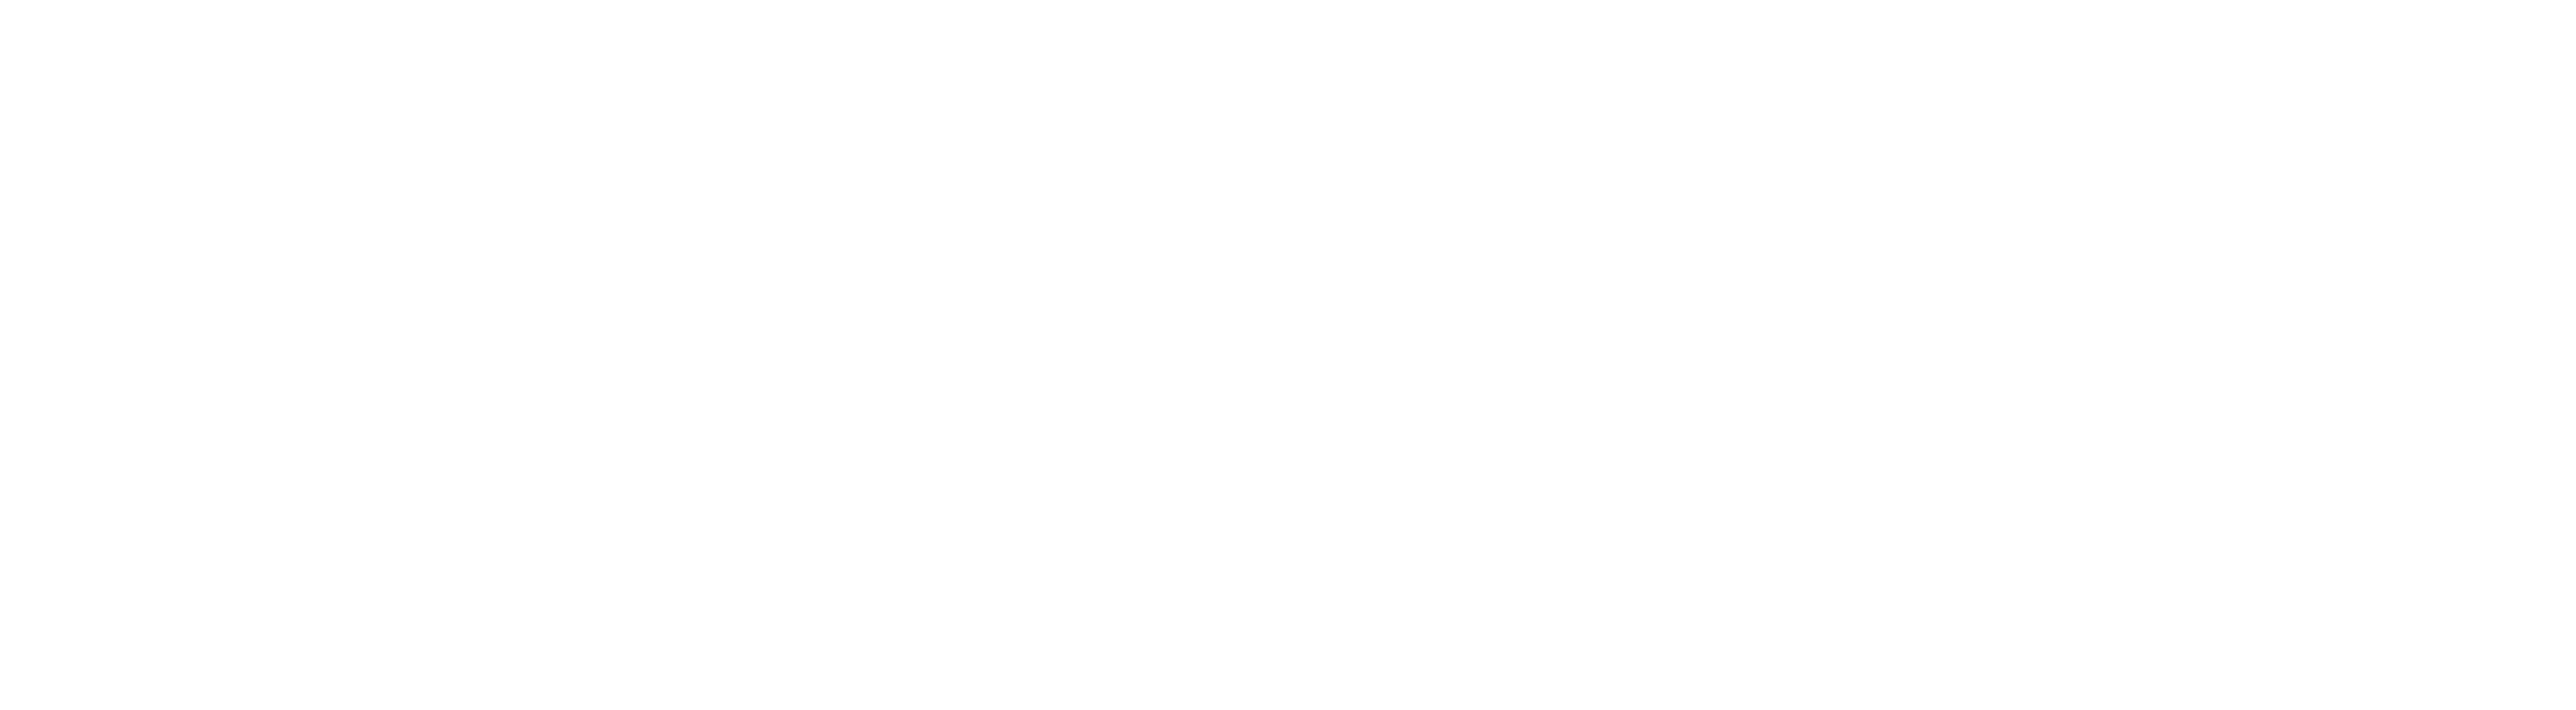 Logo Arculus white